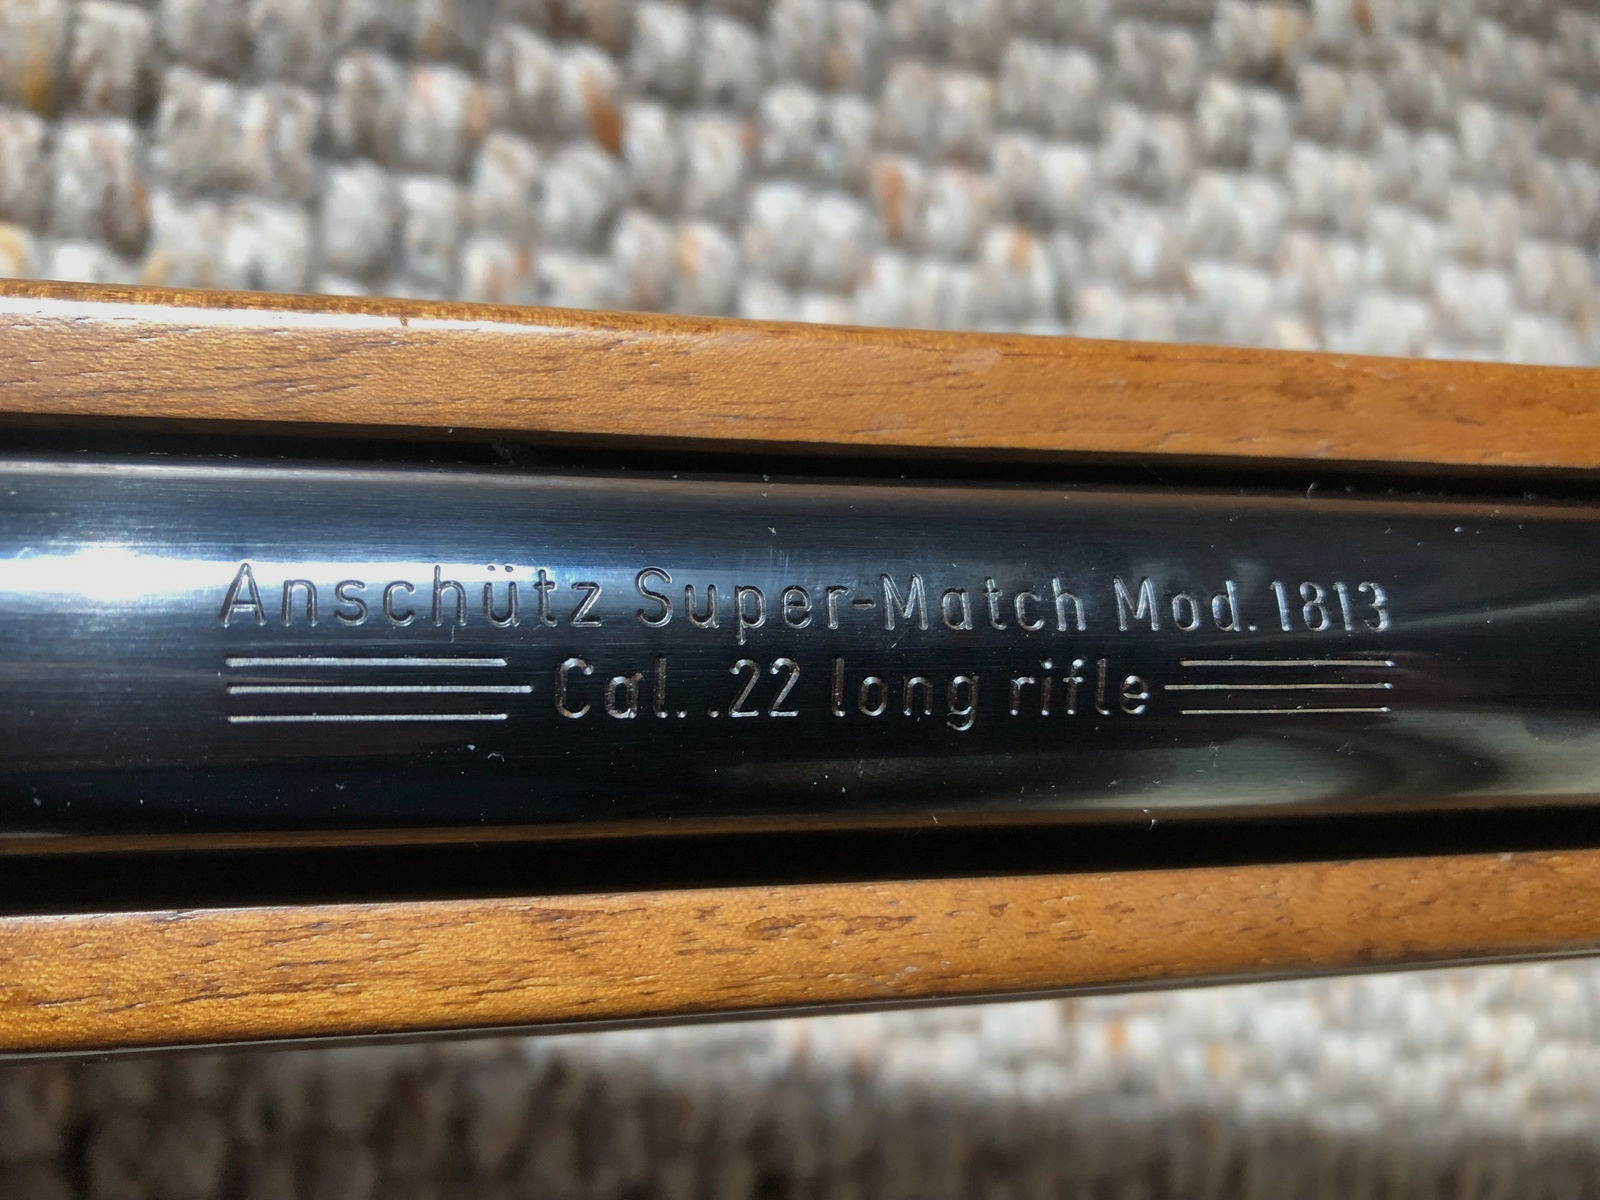 Anschütz Super- Match 1813